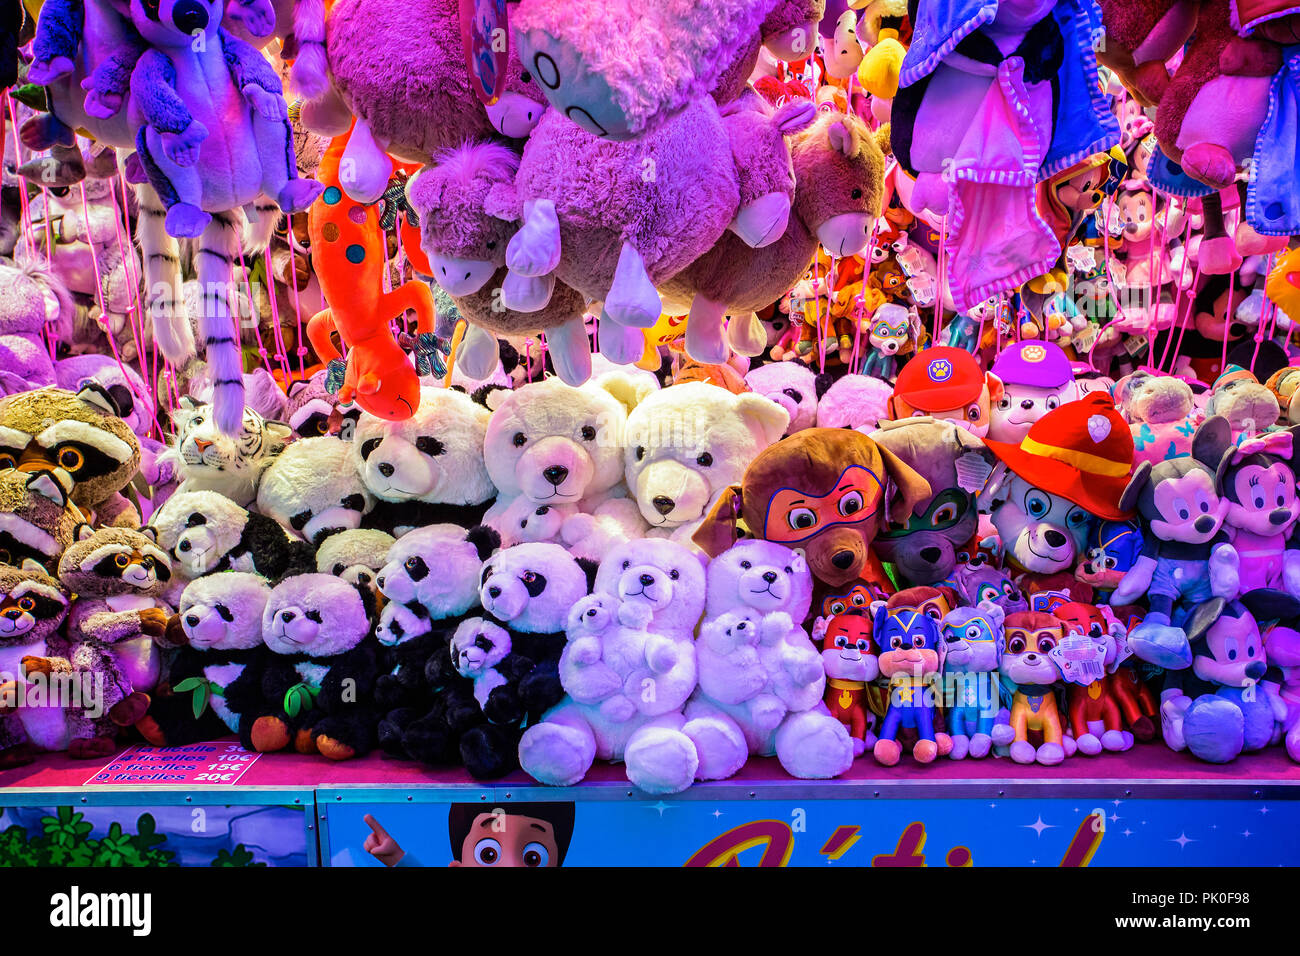 Une collection de jouets en peluche des prix lors d'une fête foraine à Arras, France prise le 31 août 2018 Banque D'Images